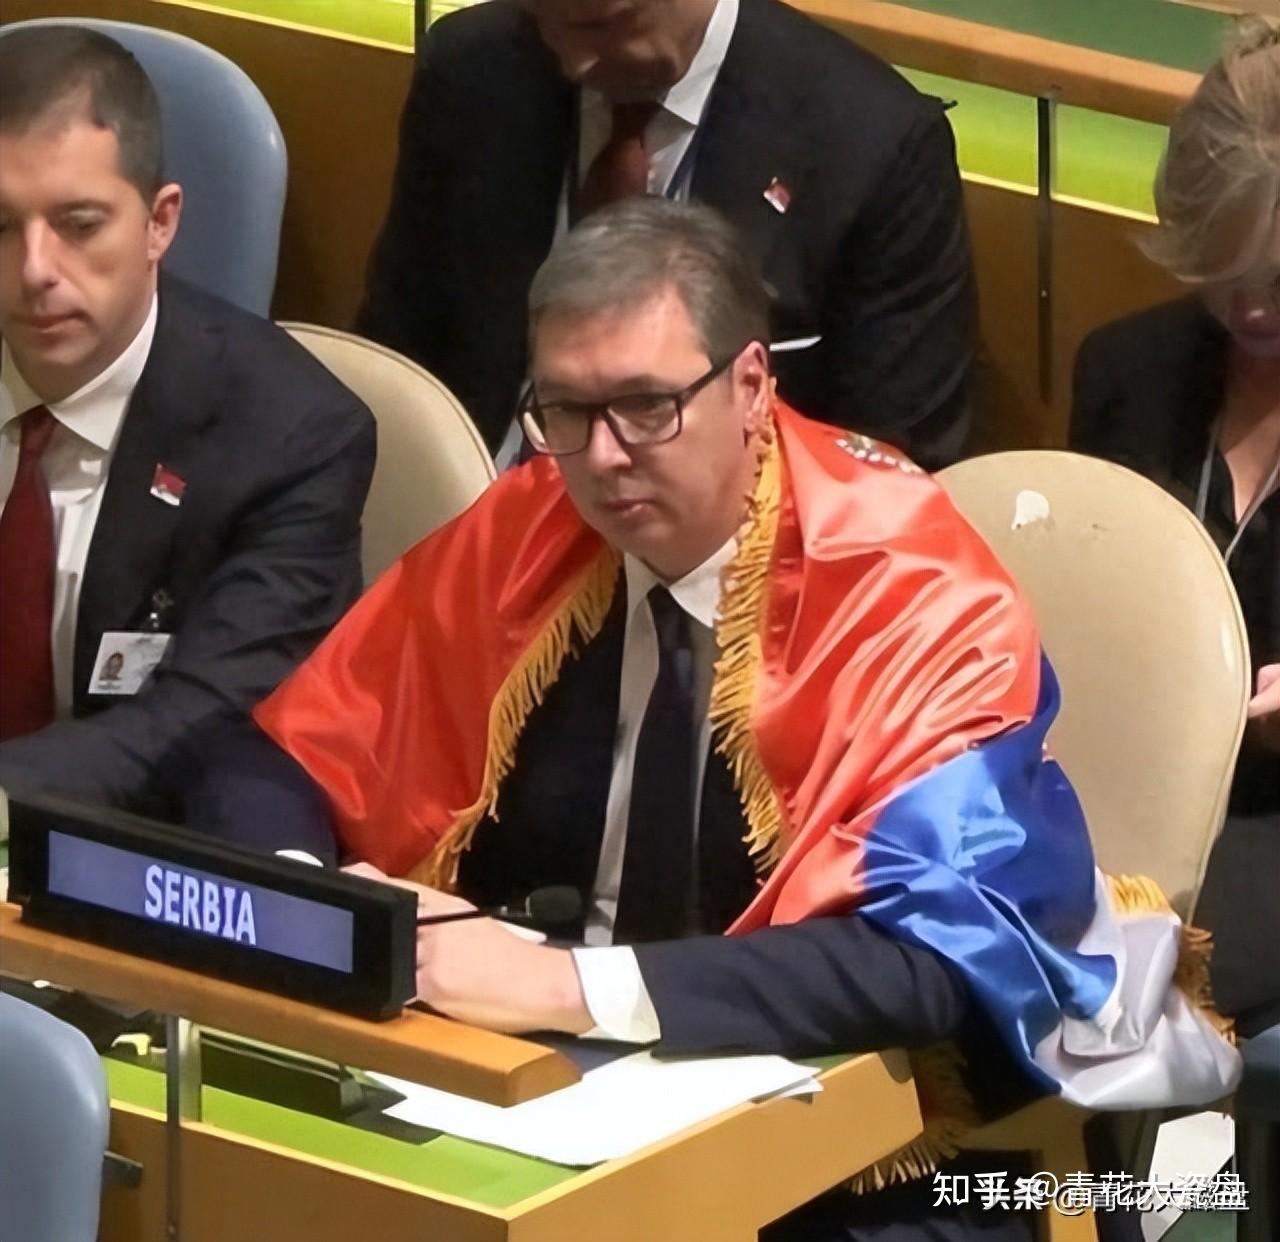 为什么塞尔维亚总统在联合国大会上披国旗反对联合国决议